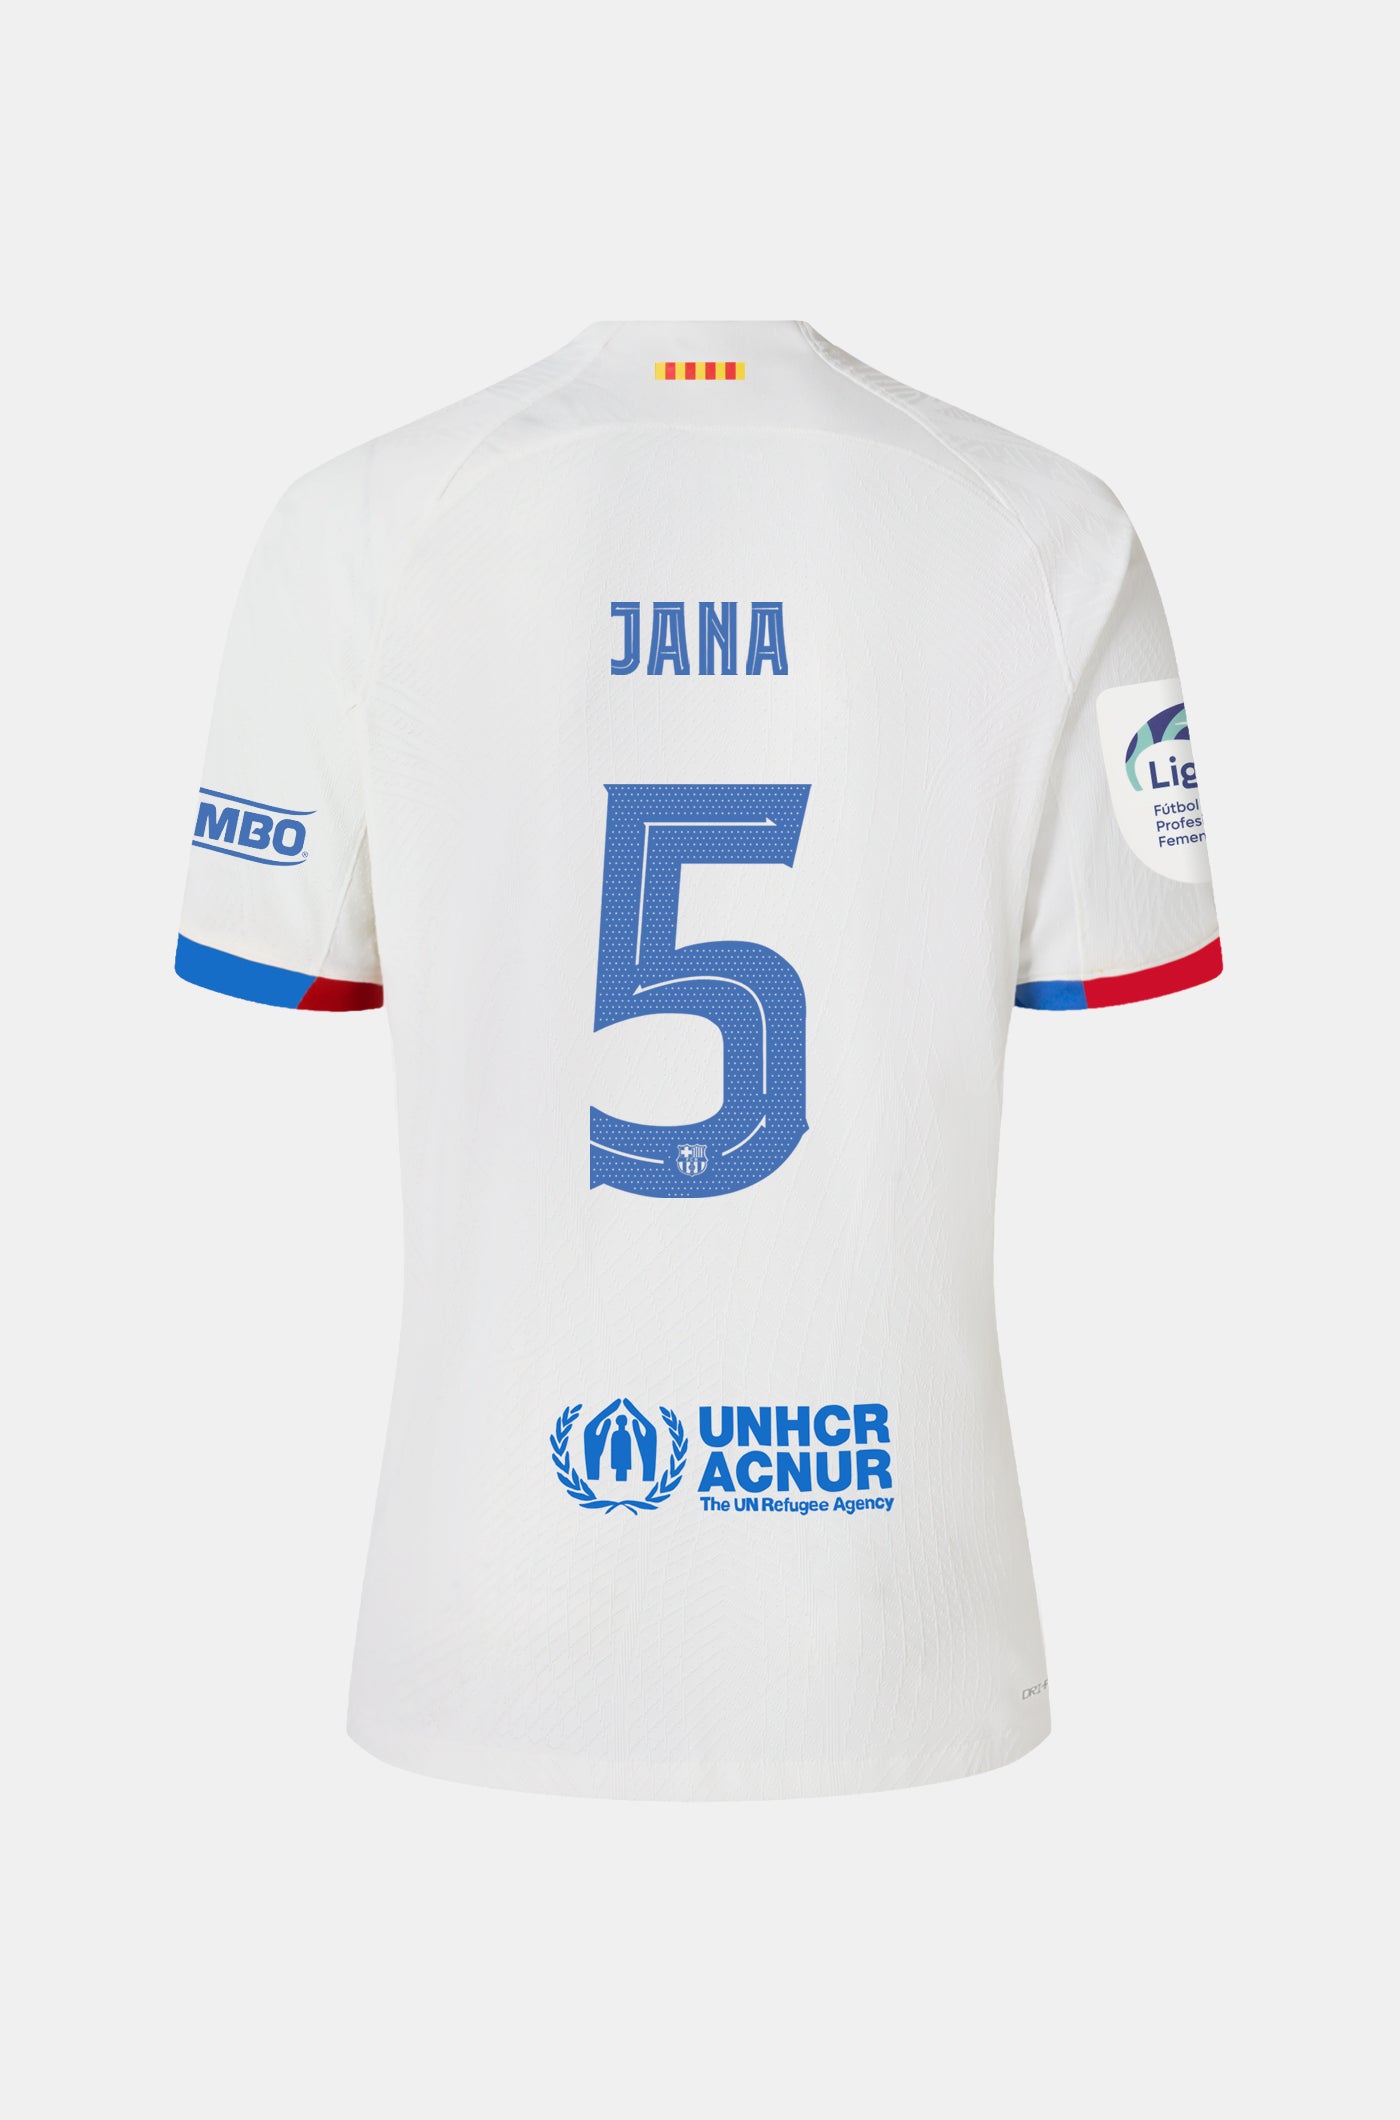 Liga F FC Barcelona away Shirt 23/24 Player’s Edition - Women  - JANA